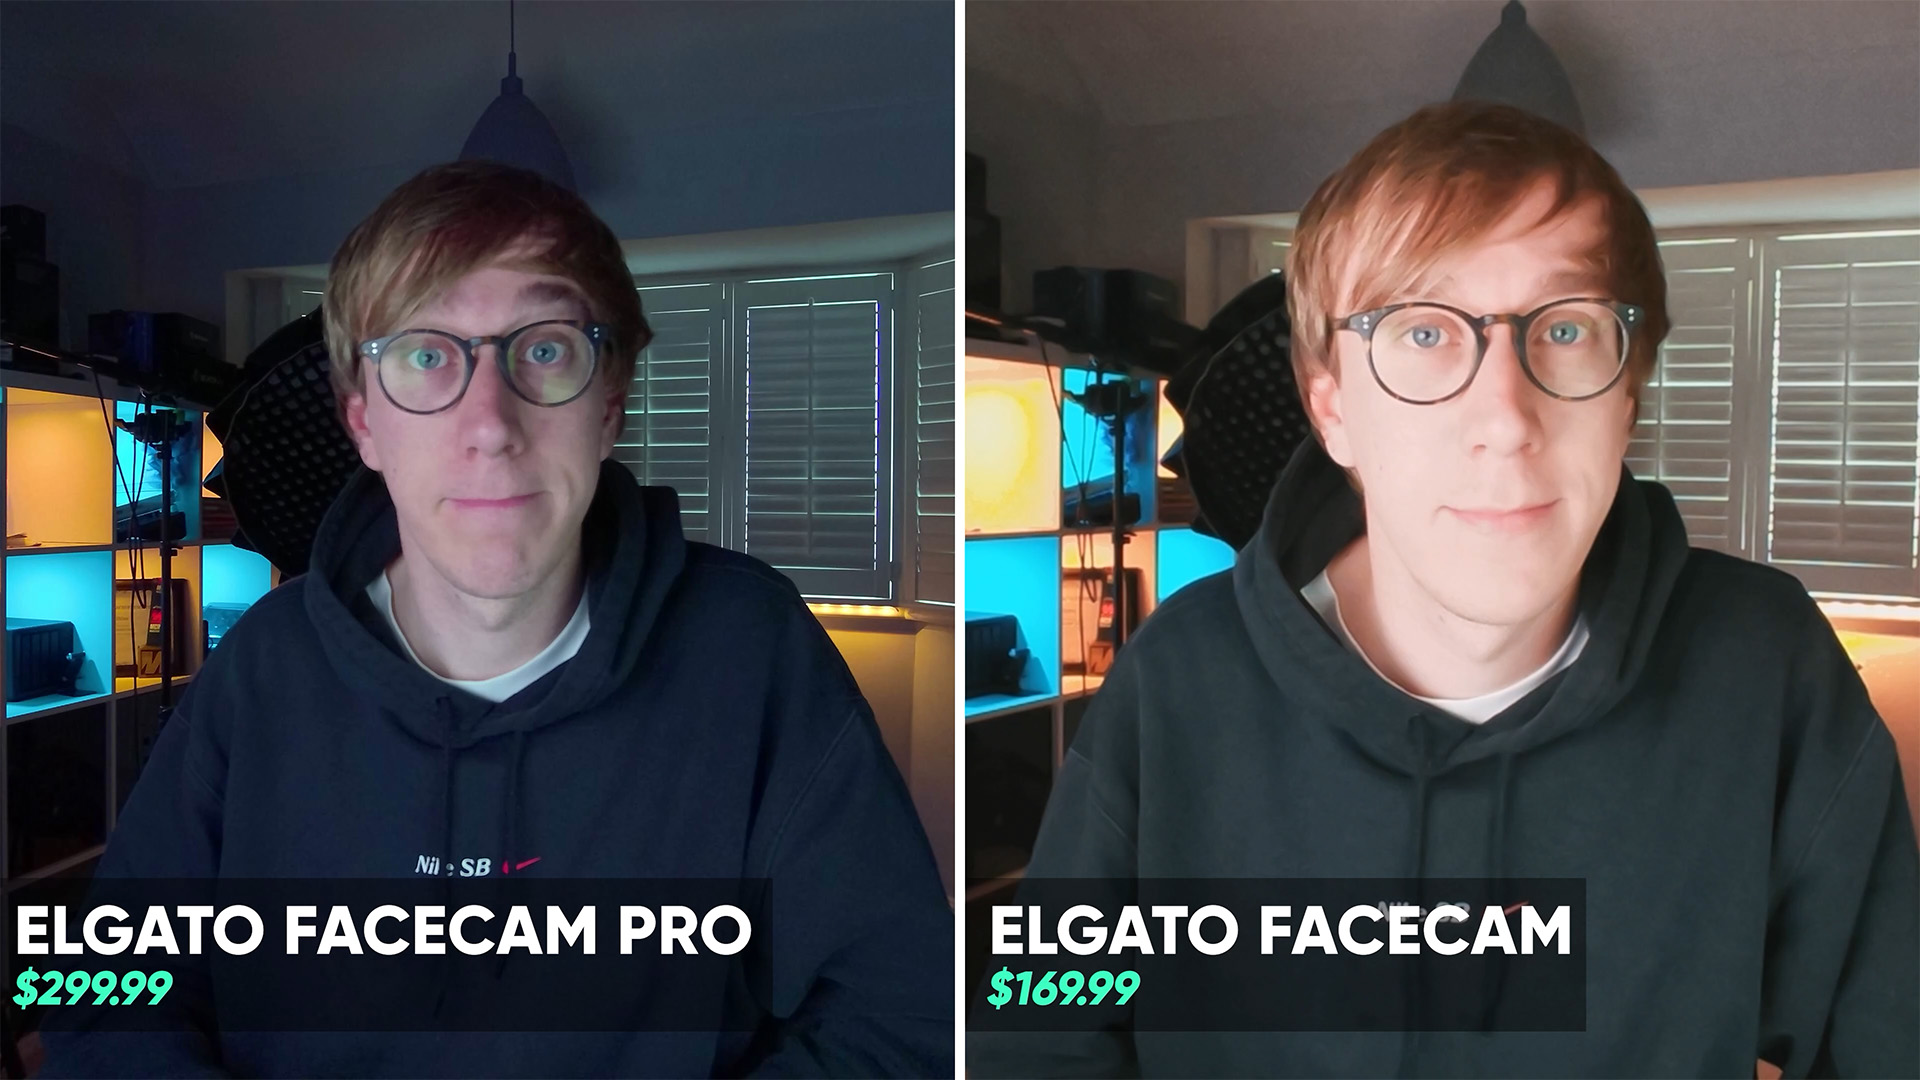 Facecam Pro vs Facecam No Lighting